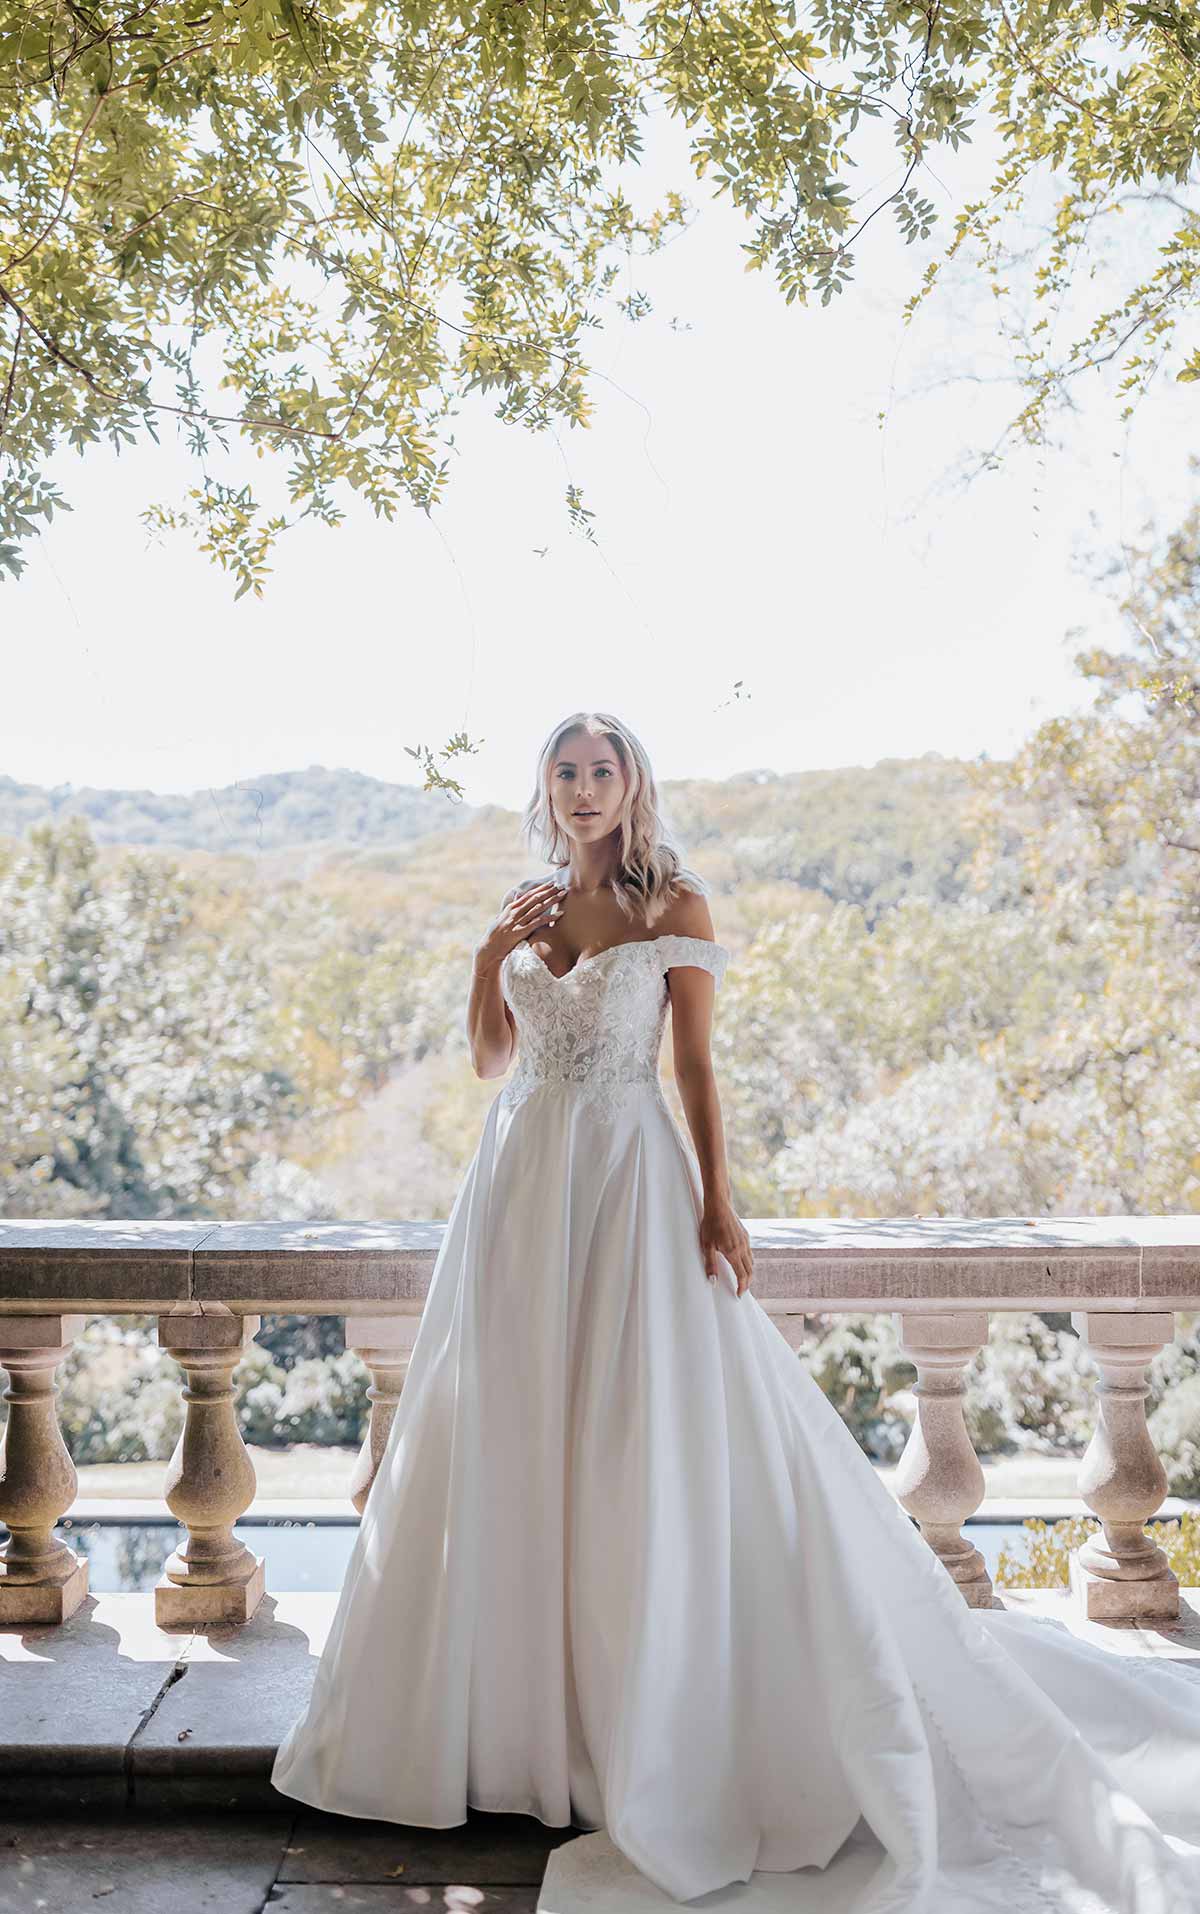 Sparkly Silk Ballgown Wedding Dress with Sweetheart Neckline, D3565, by Essense of Australia